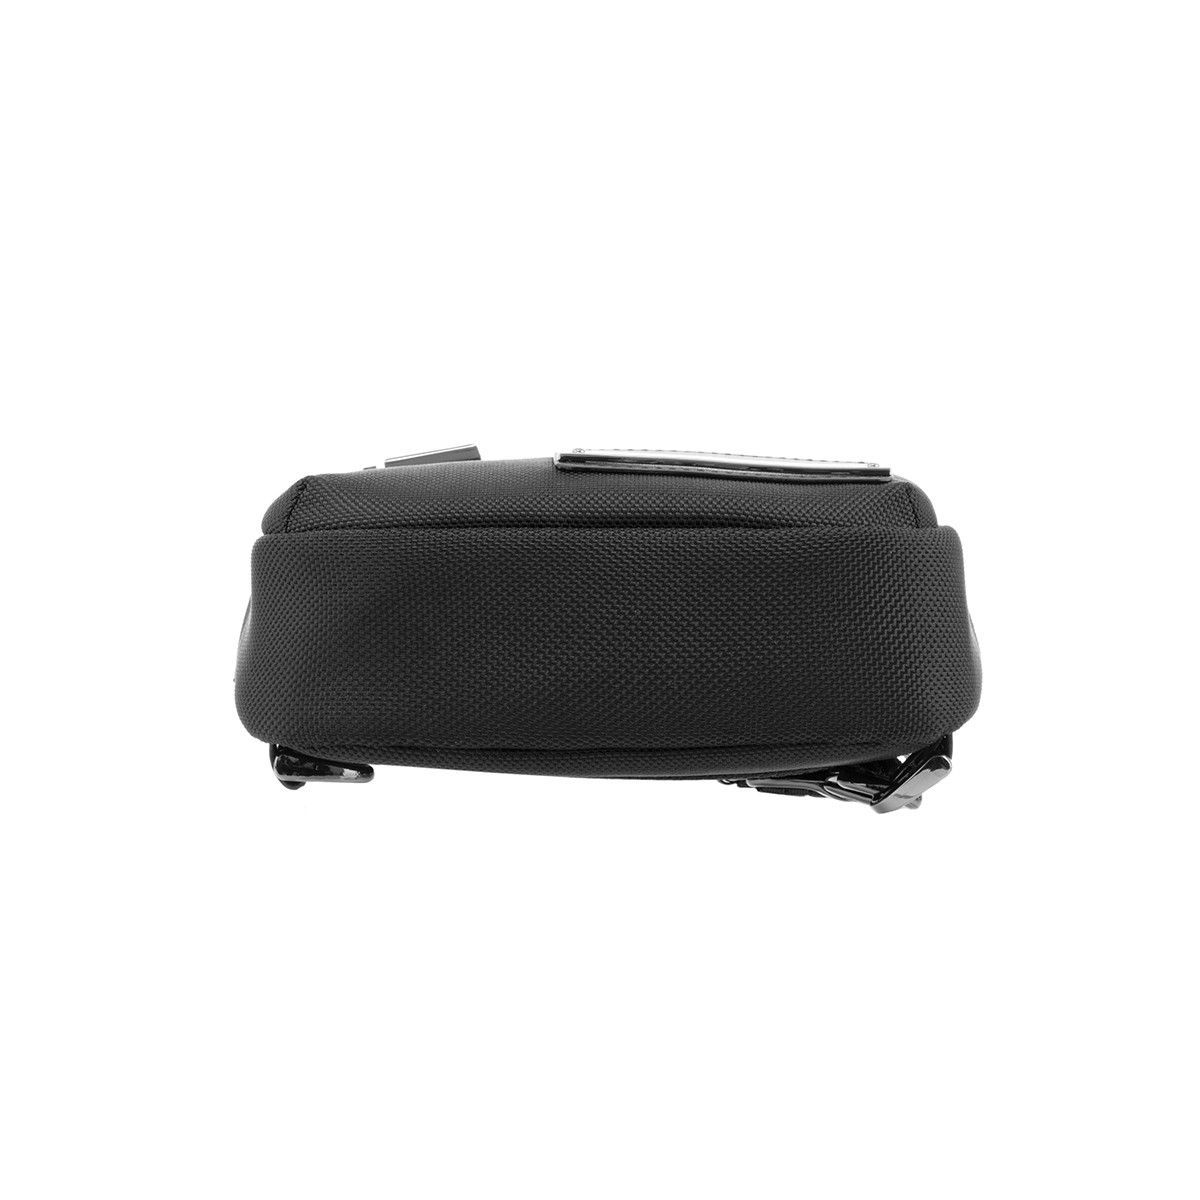 Samsonite Rebel X - Laptop Backpack with RFID by Samsonite Luggage  (Rebel-X-Backpack)